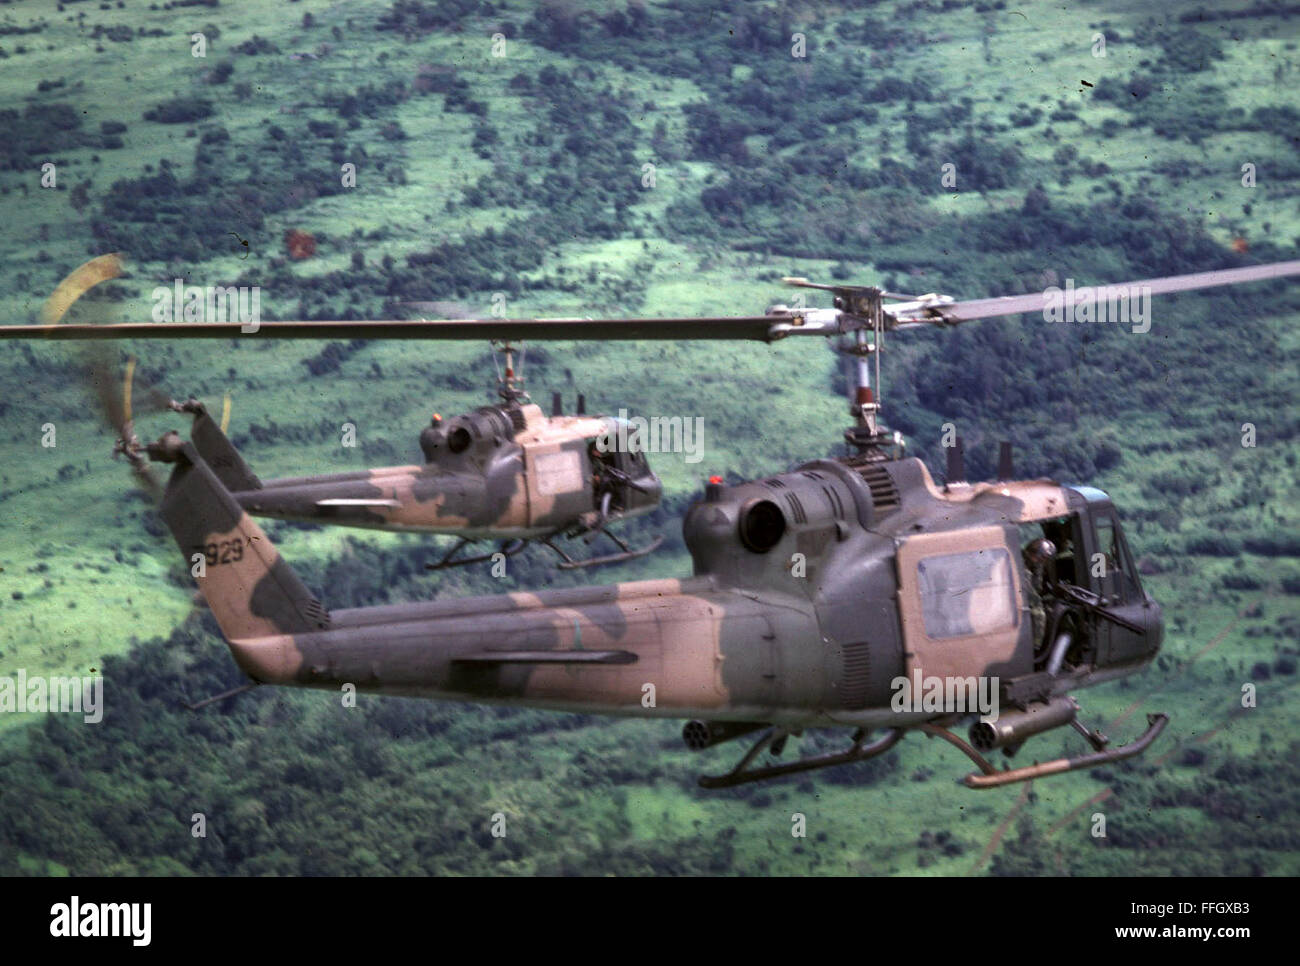 Während des Vietnam-Krieges Luftwaffe Hubschrauber special Operations-Teams in Kambodscha eingefügt. Kommunistische Lieferungen verschoben vom Hafen Kompong Som nach Südvietnam am Wegesrand Sihanouk. Bis 1969 unberührte diese Arterie, benannt nach kambodschanischen Führer Prinz Sihanouk, blieb weitgehend. Stockfoto